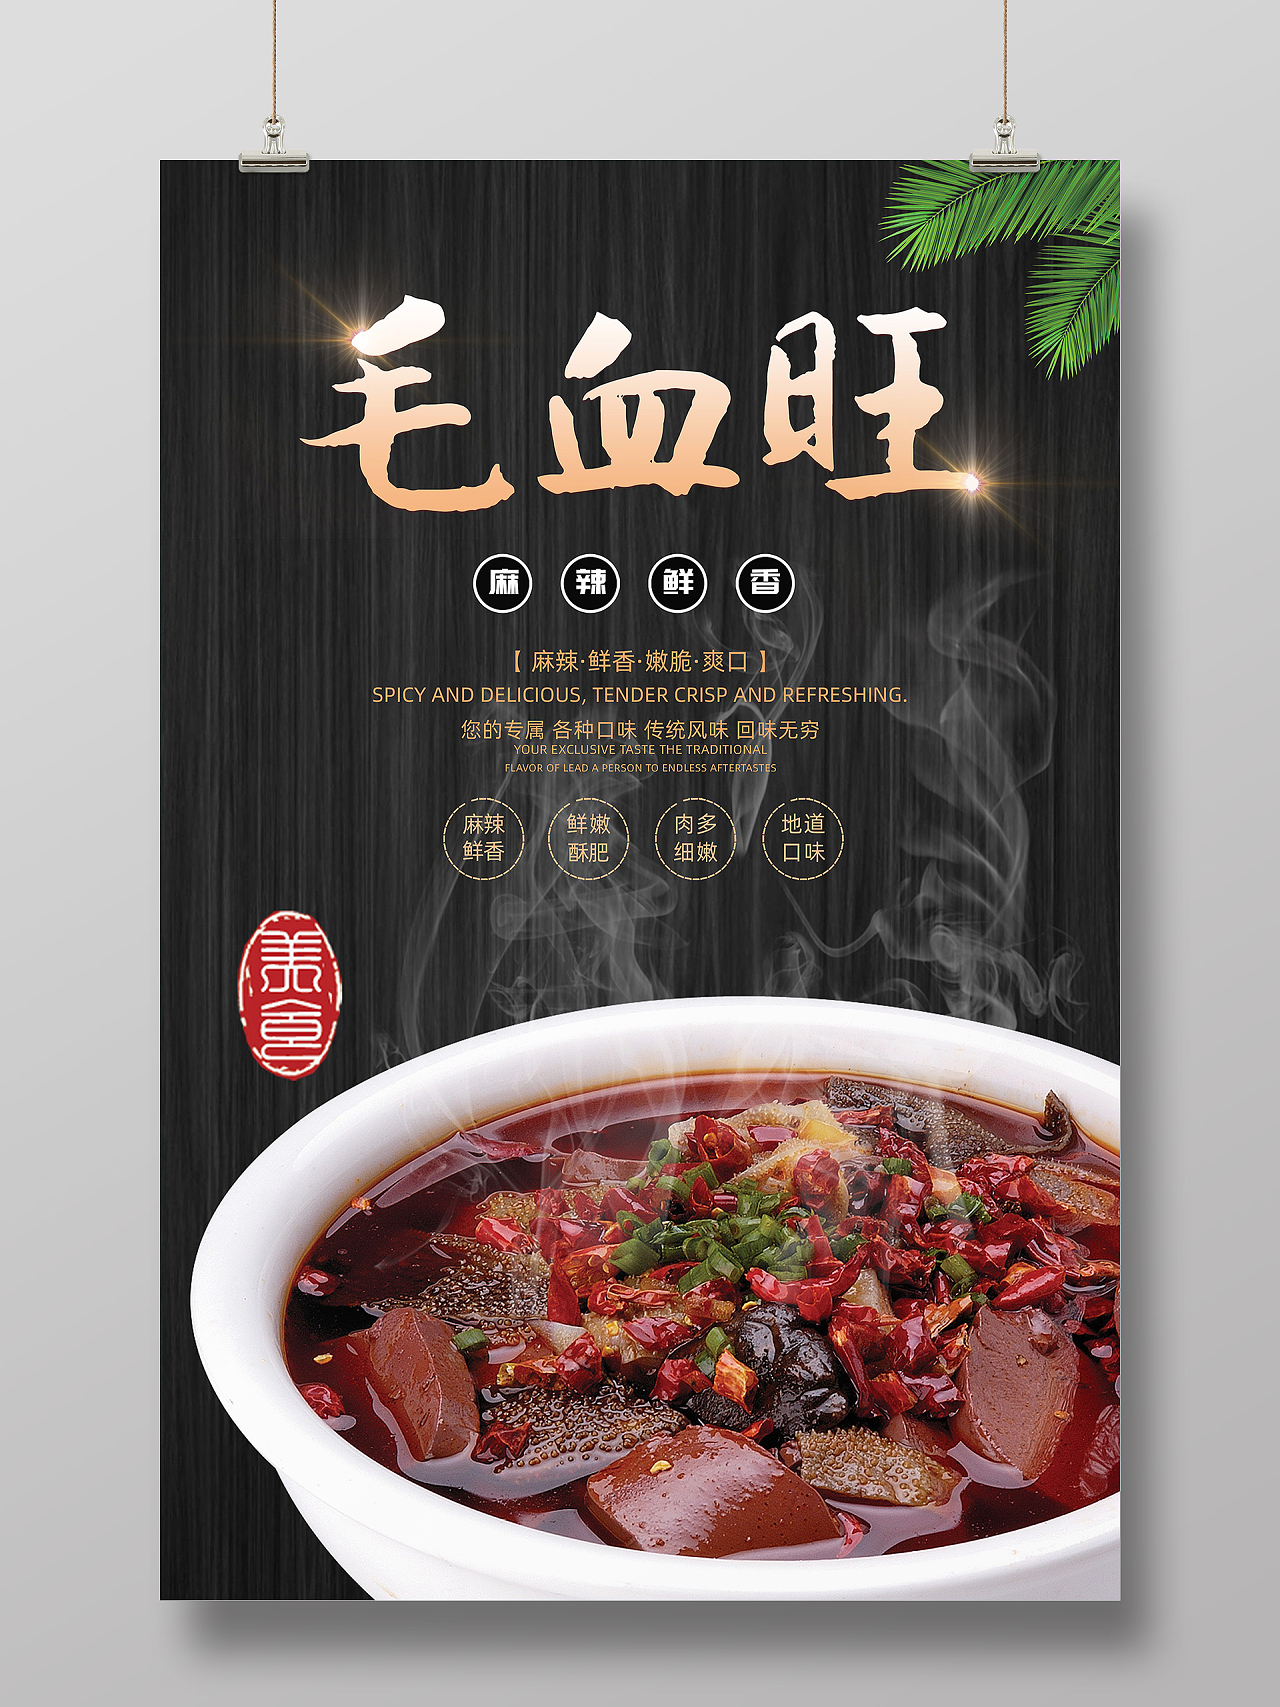 中国风毛血旺美食餐馆饭店海报毛血旺美食海报